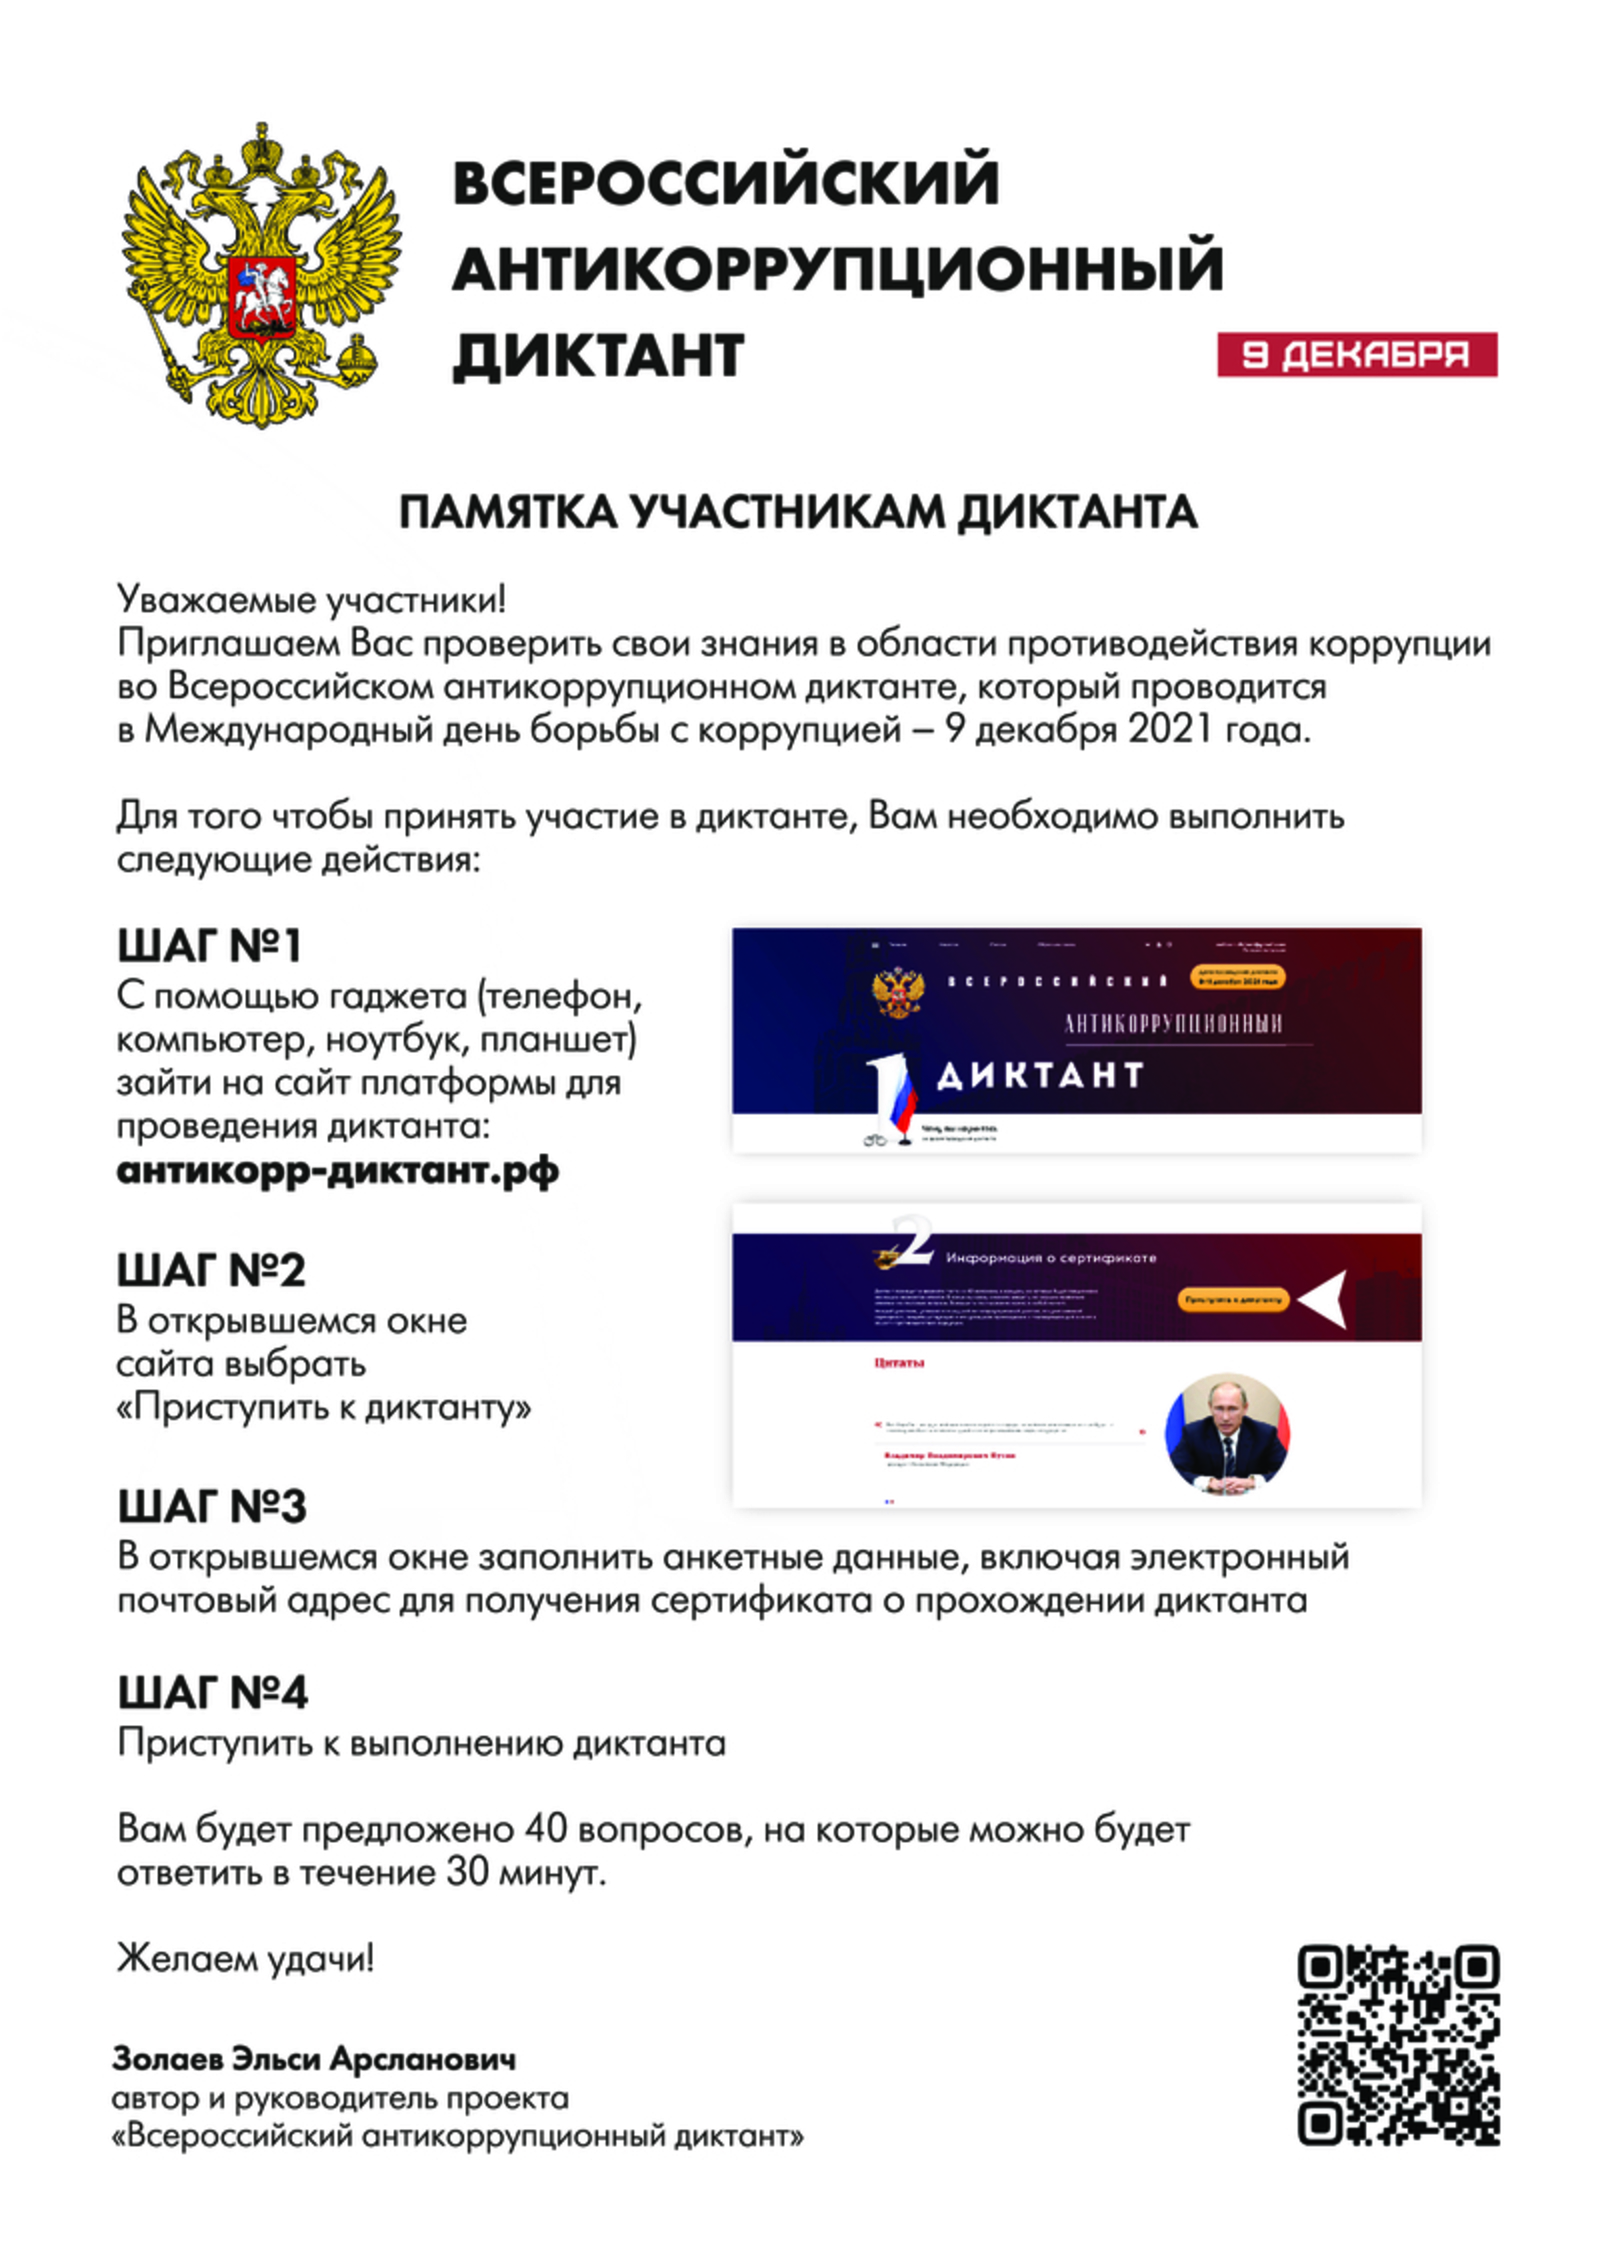 9 декабря состоится Всероссийский антикоррупционный диктант